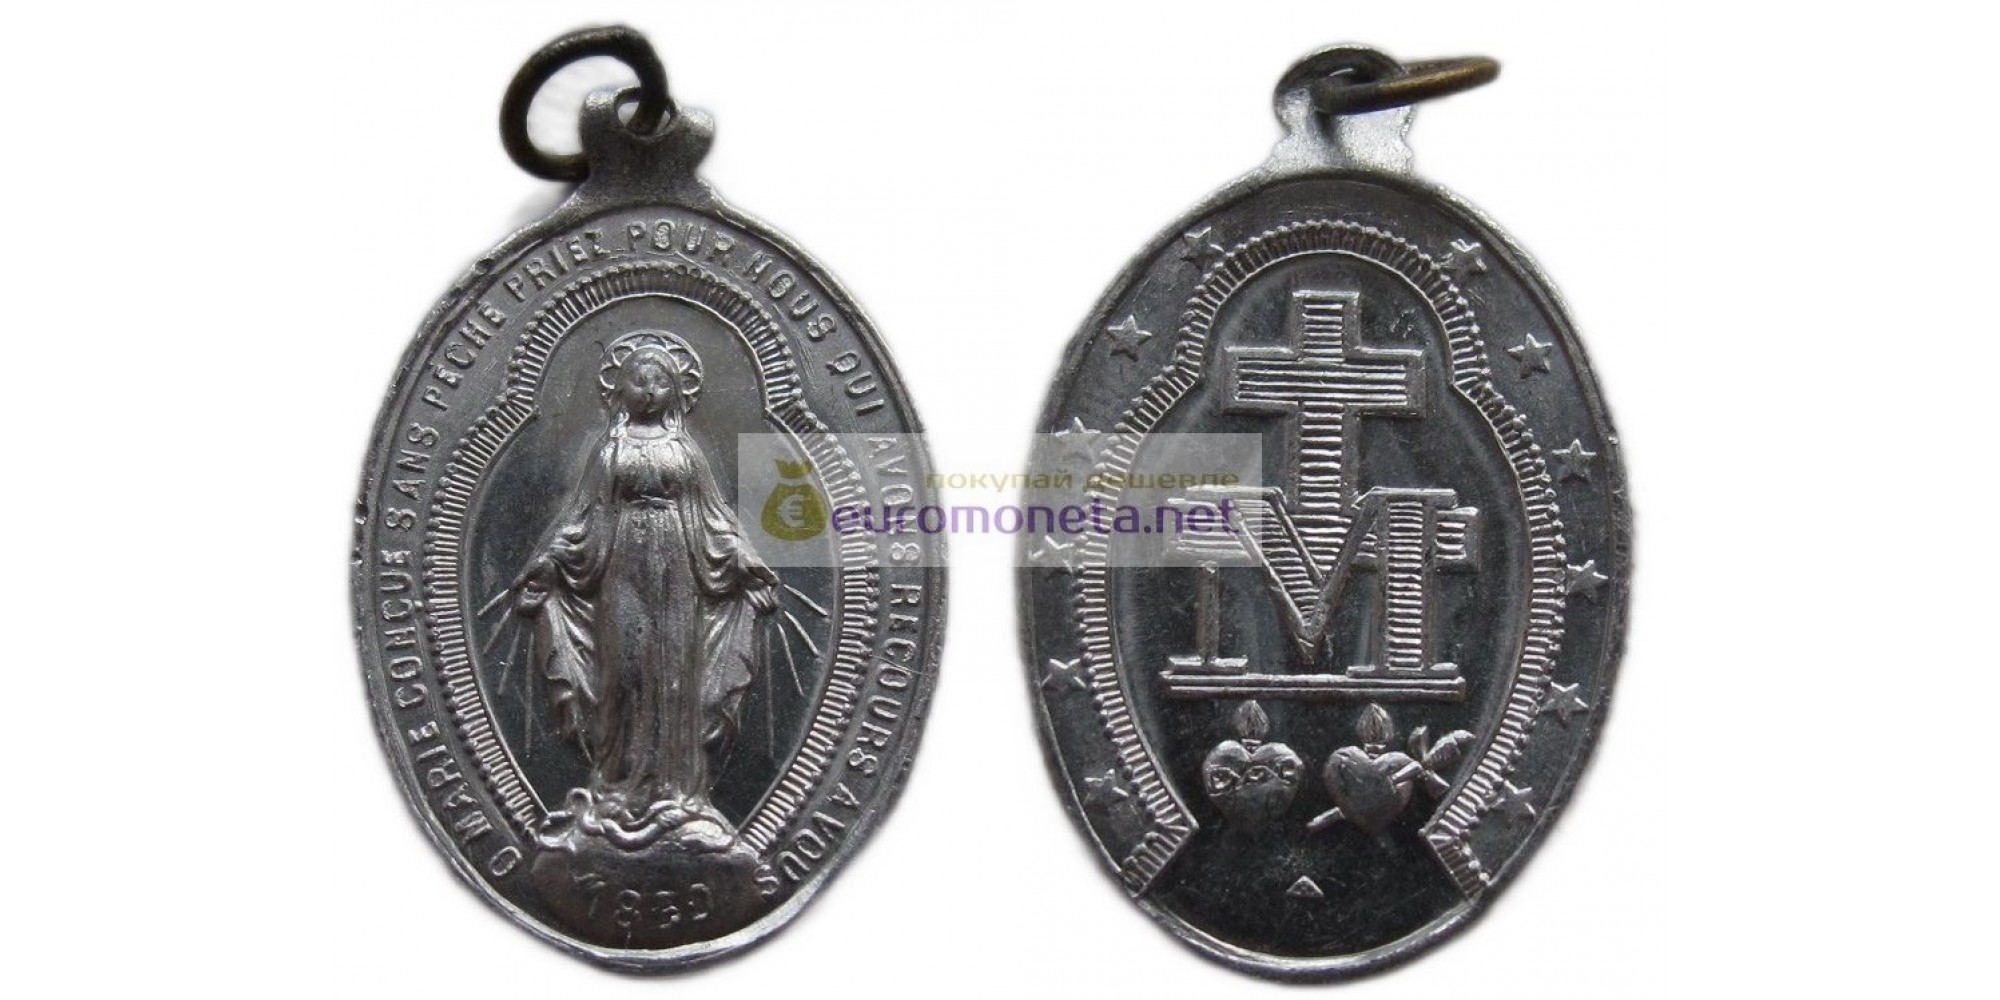 Медаль / подвеска: О Мария, зачатая без греха, молись о нас, прибегающих к тебе. Алюминий на обороте о Мария Зачатая без греха.